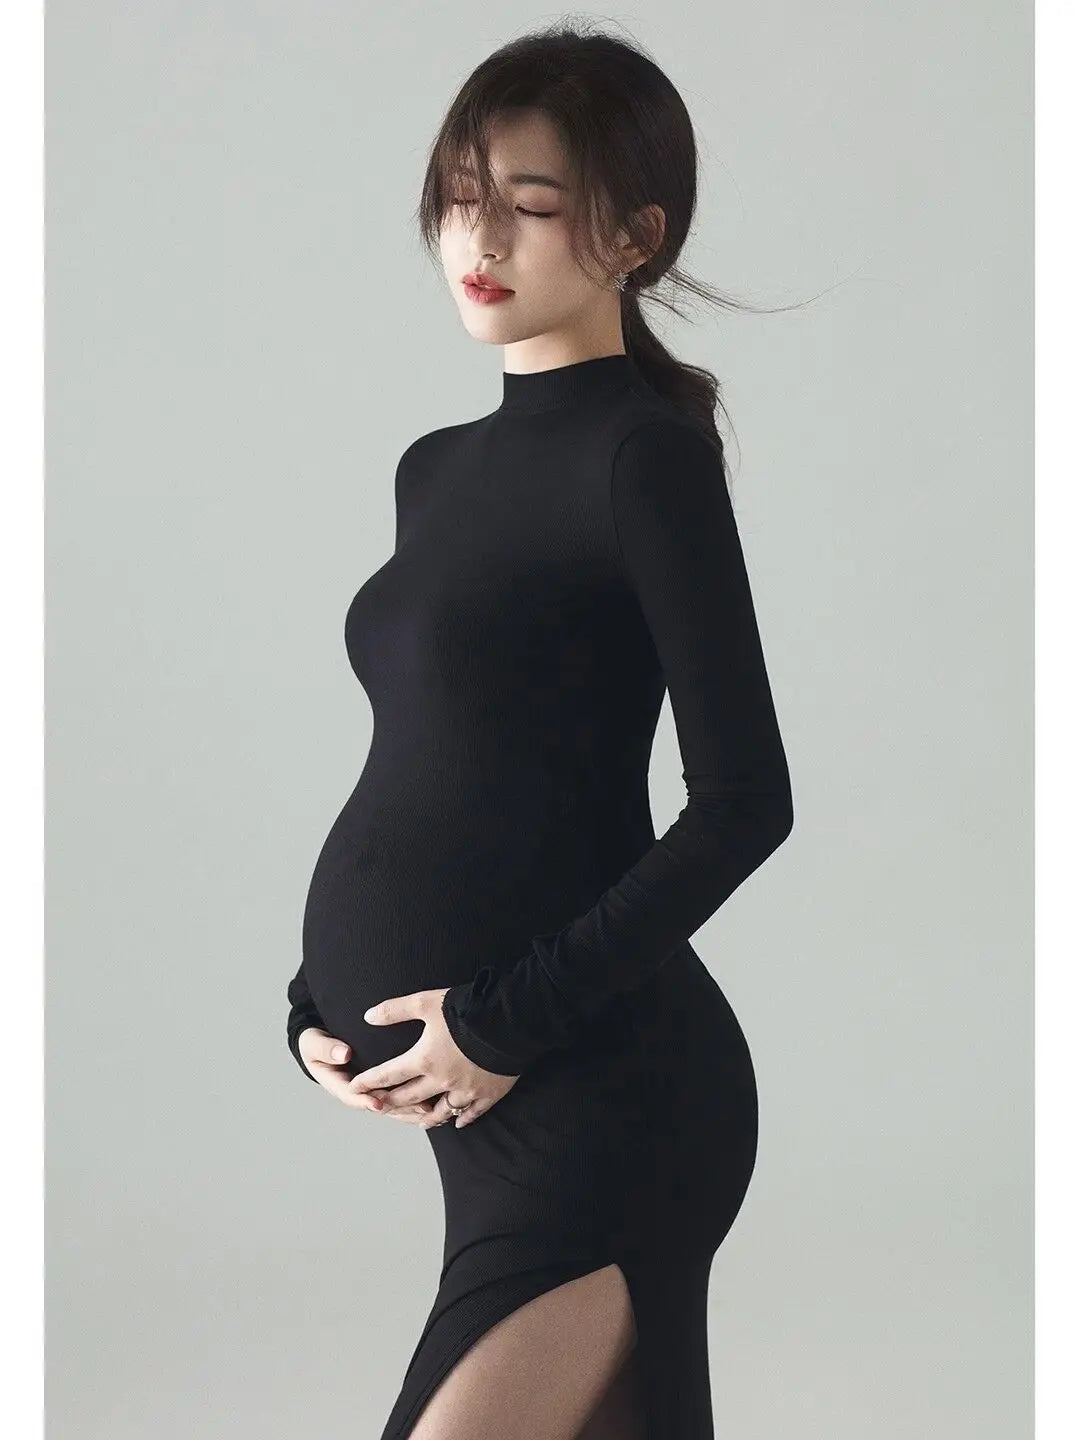 Lace Maternity Photo Dress